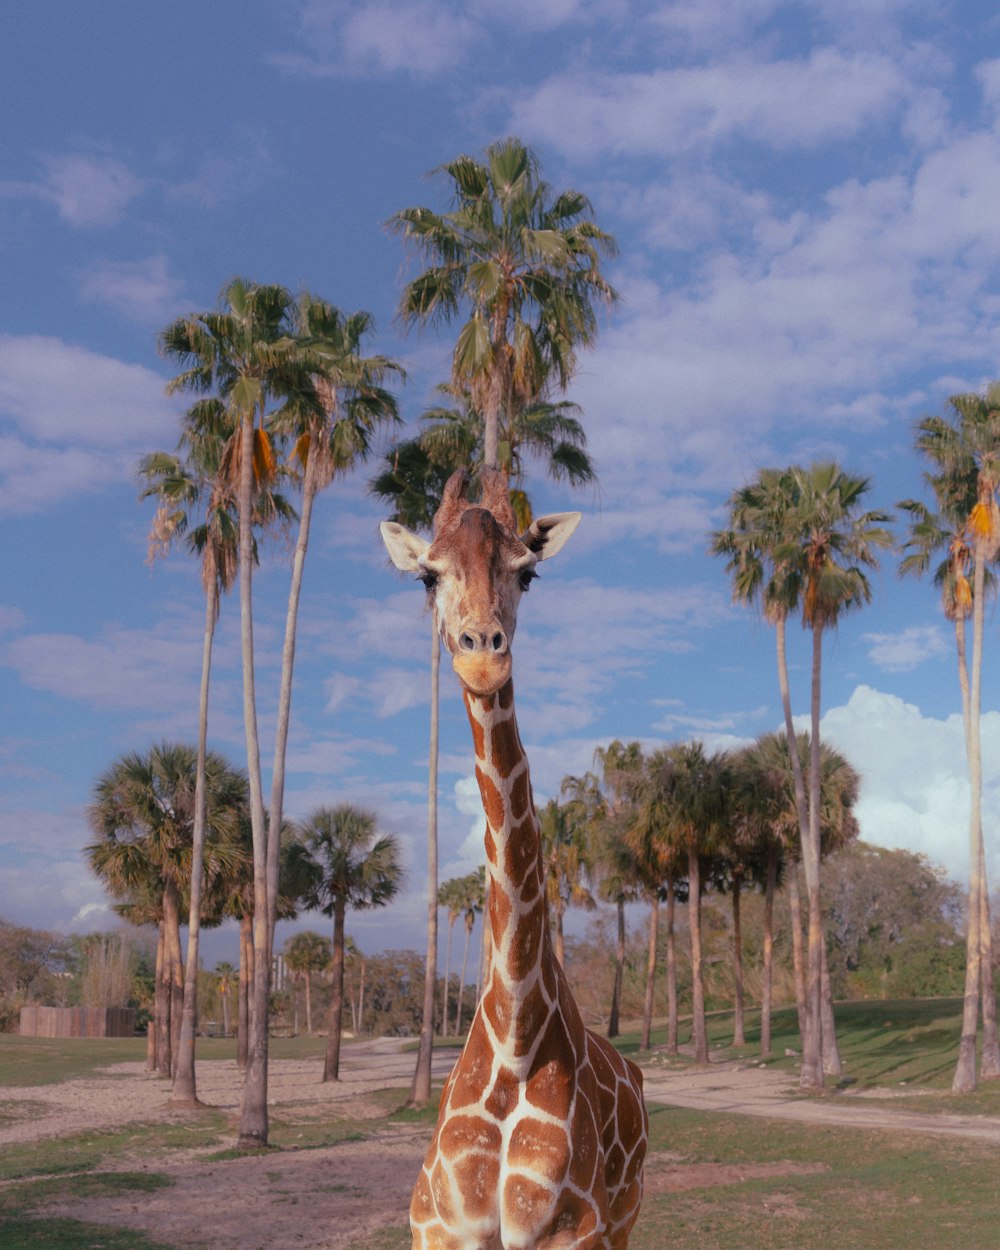 una giraffa in piedi in un campo con le palme